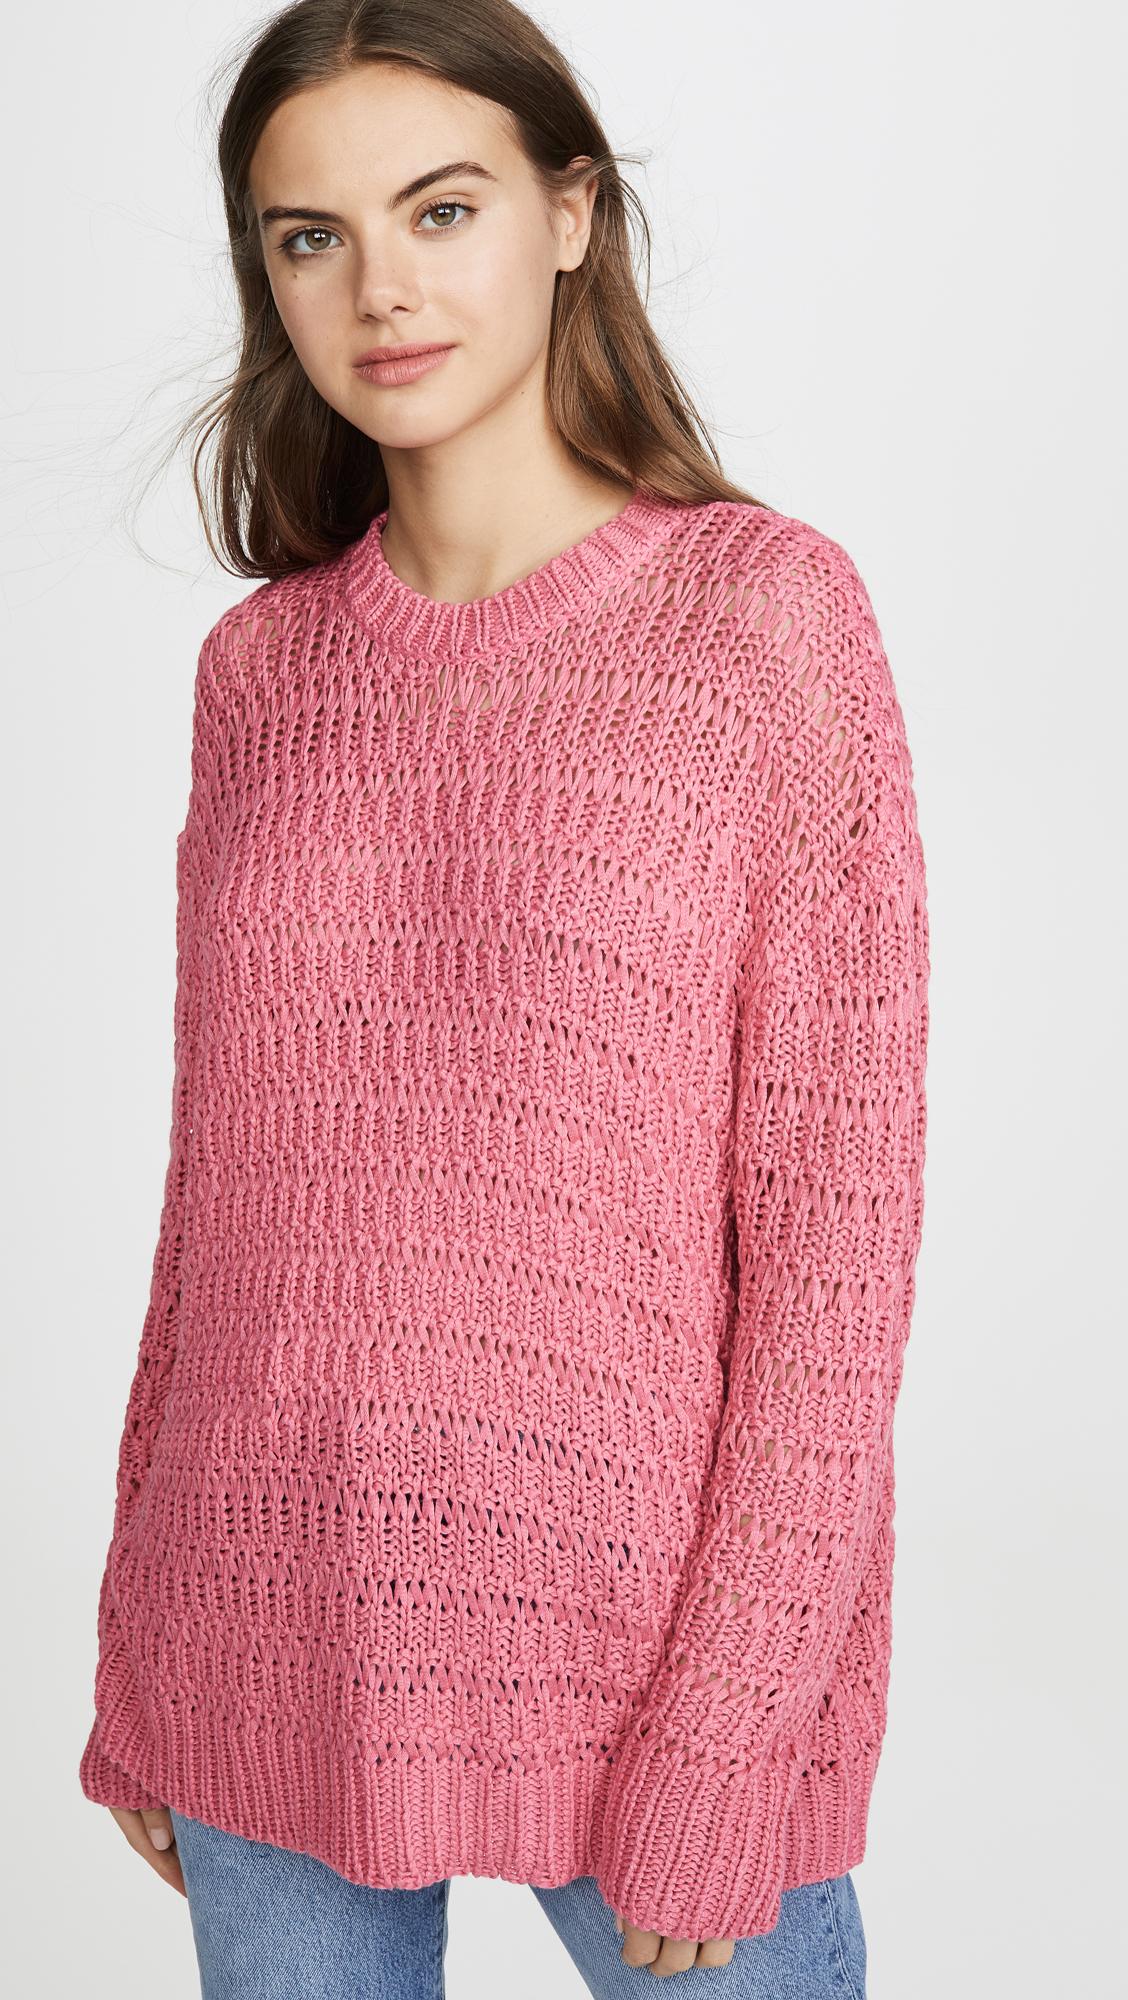 Anine Bing Juliet Sweater in Pink - Lyst